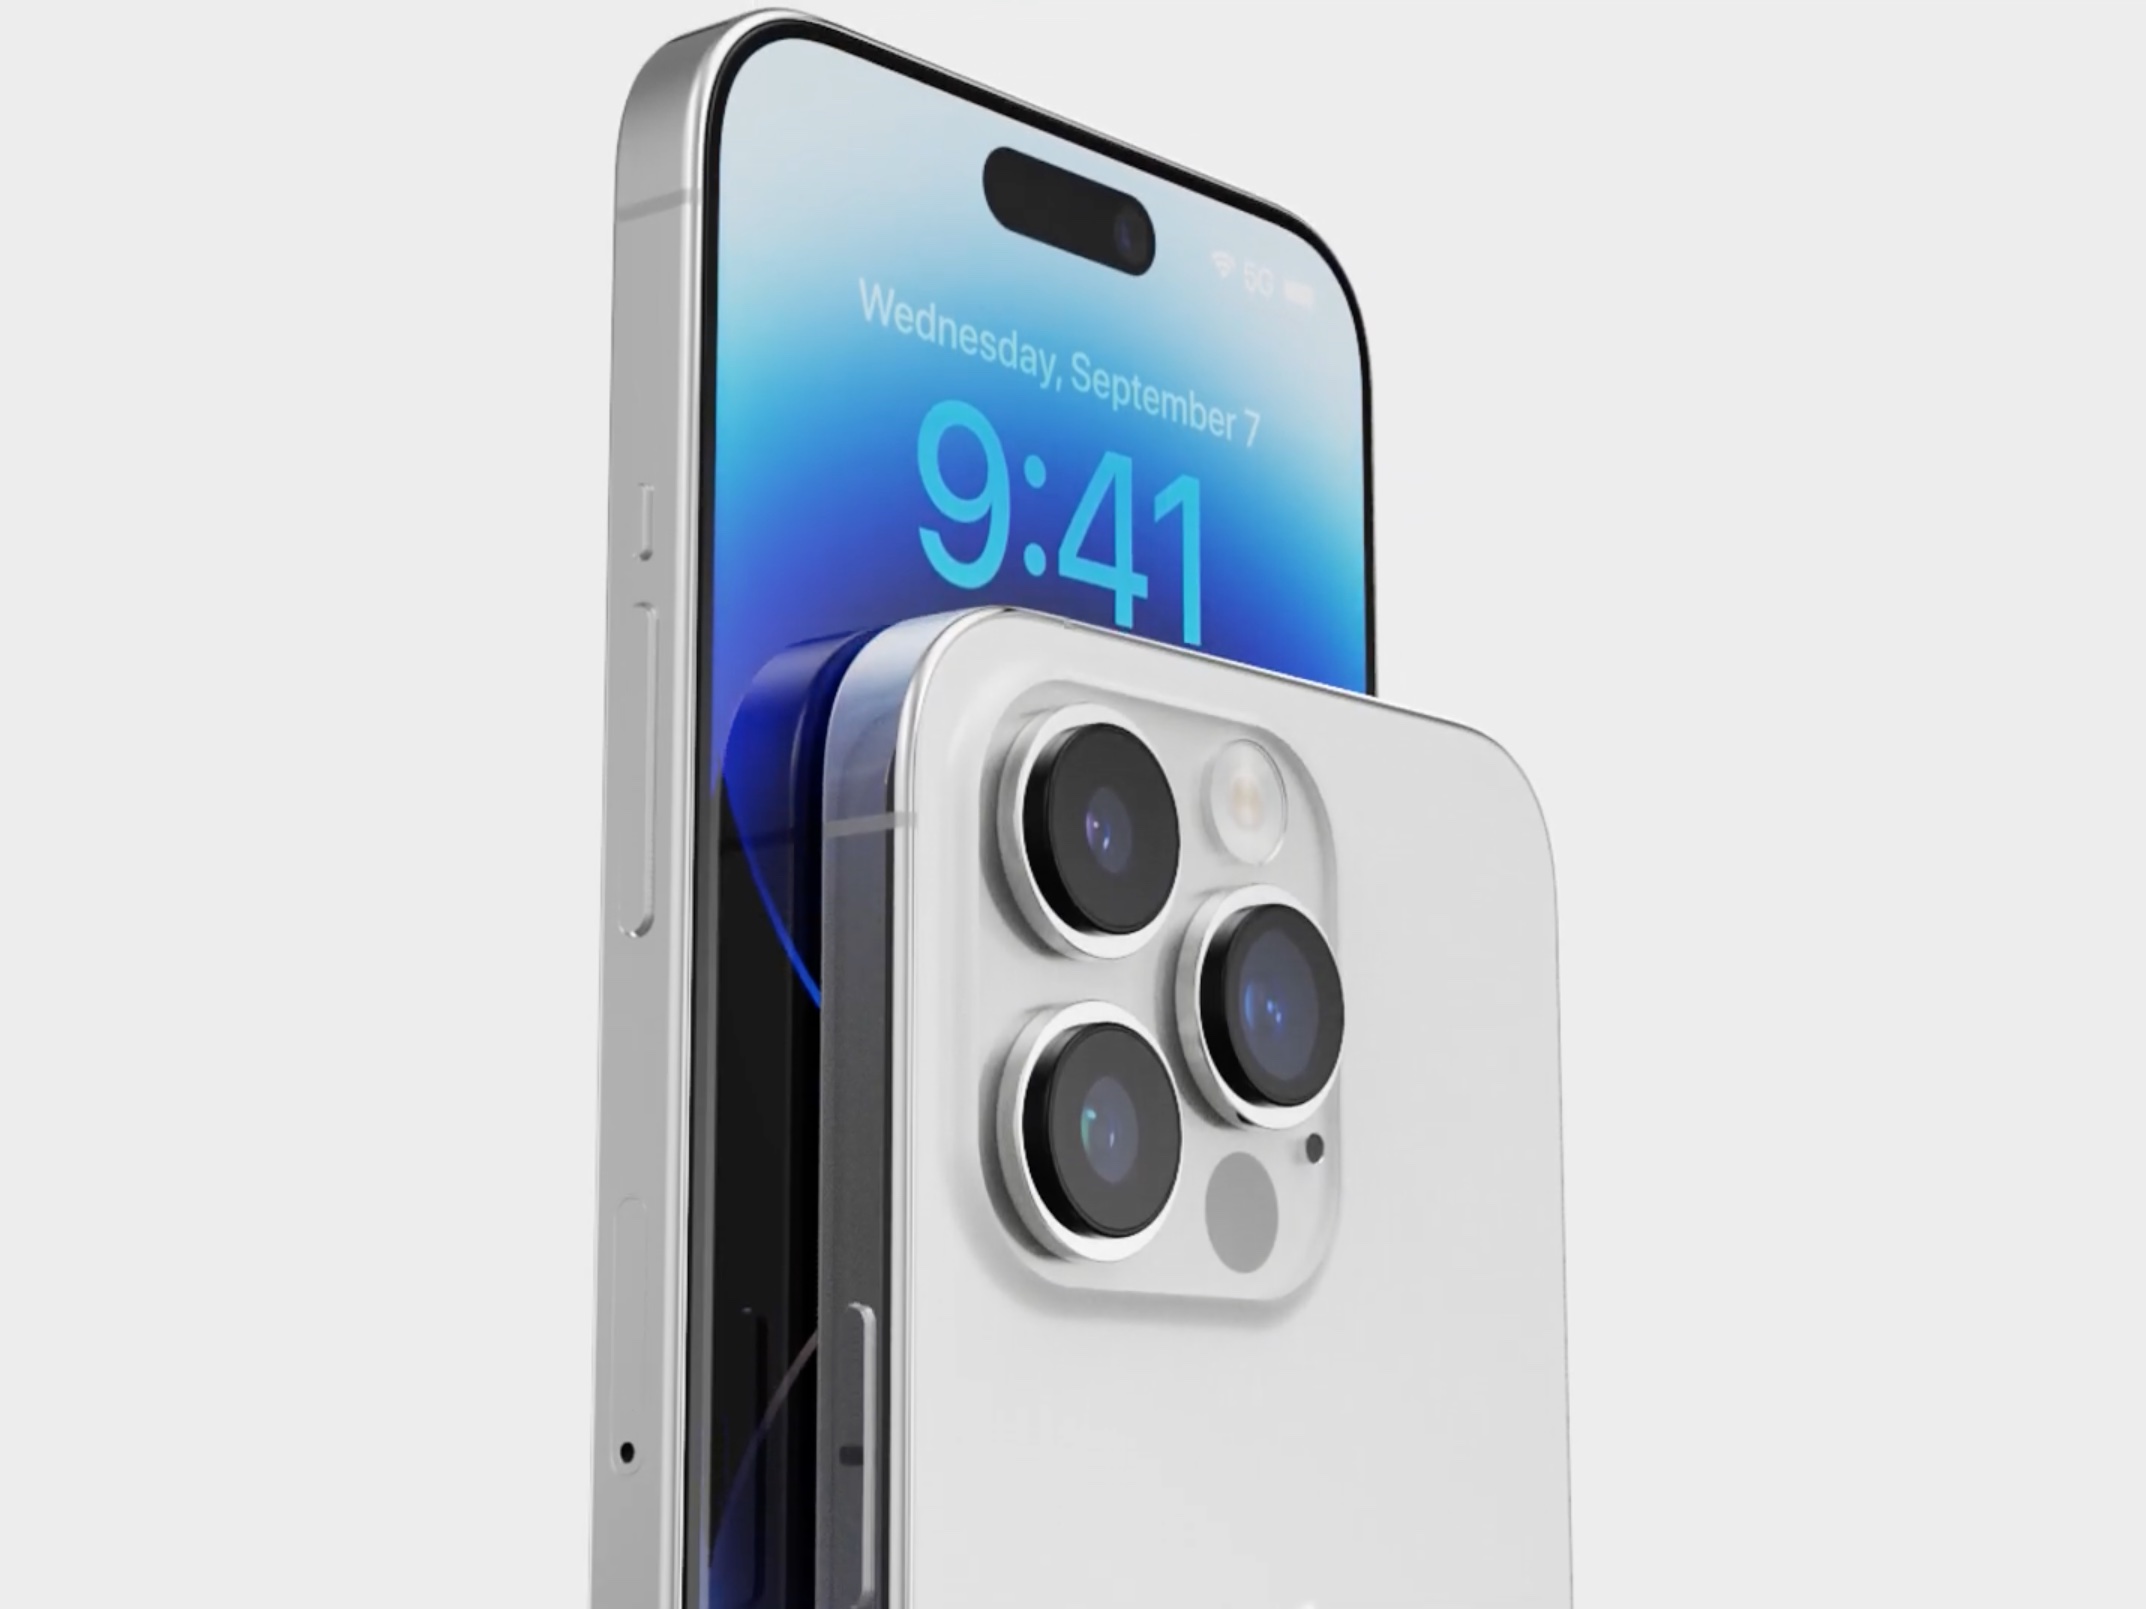 Universo de hielo: el iPhone 15 Pro Max consigue el bisel más fino de cualquier smartphone actual